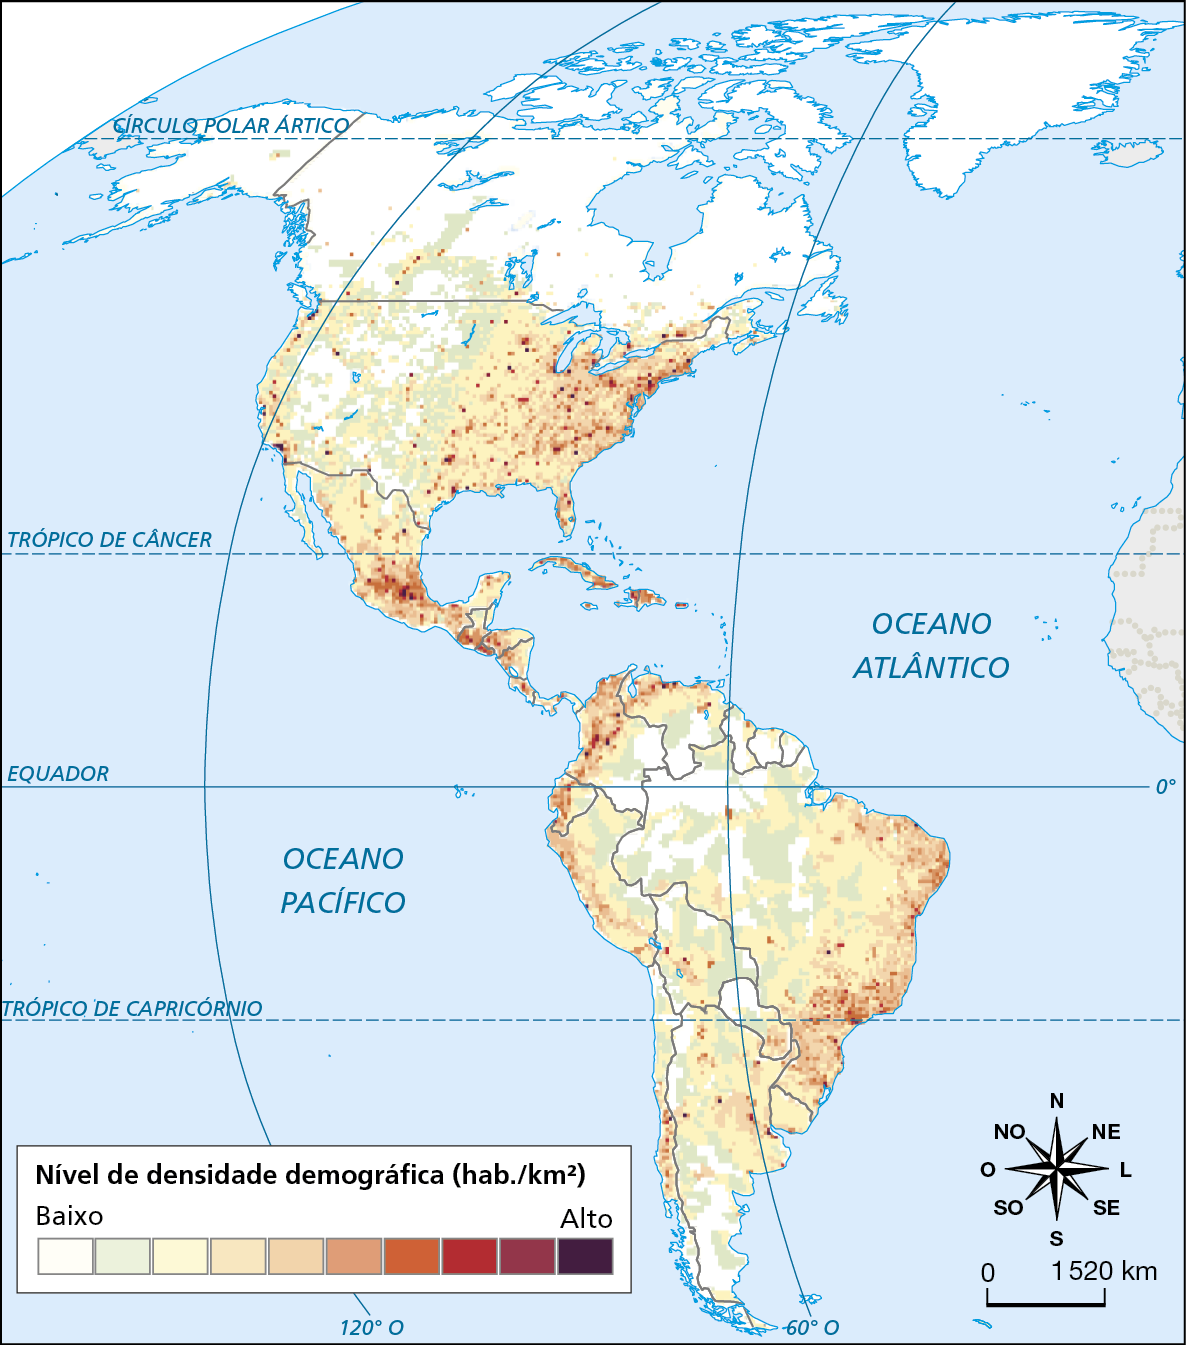 Mapa. América: nível de densidade demográfica. 
Mapa da América mostrando a densidade demográfica no continente, de baixo a alto.
Nível de densidade demográfica baixo: grande parte do Canadá, Alasca, Groenlândia, trechos do centro-oeste dos Estados Unidos; trechos da região norte do Brasil, sul da Colômbia, da Venezuela e leste do Peru e Bolívia. 
Nível de densidade demográfica alto: região leste dos Estados Unidos; região central do México; regiões da América Central; região nordeste da Colômbia e norte da Venezuela; região sudeste e litoral do Brasil. 
Na parte inferior direta, a rosa dos ventos e escala de 0 a 1.520 quilômetros.